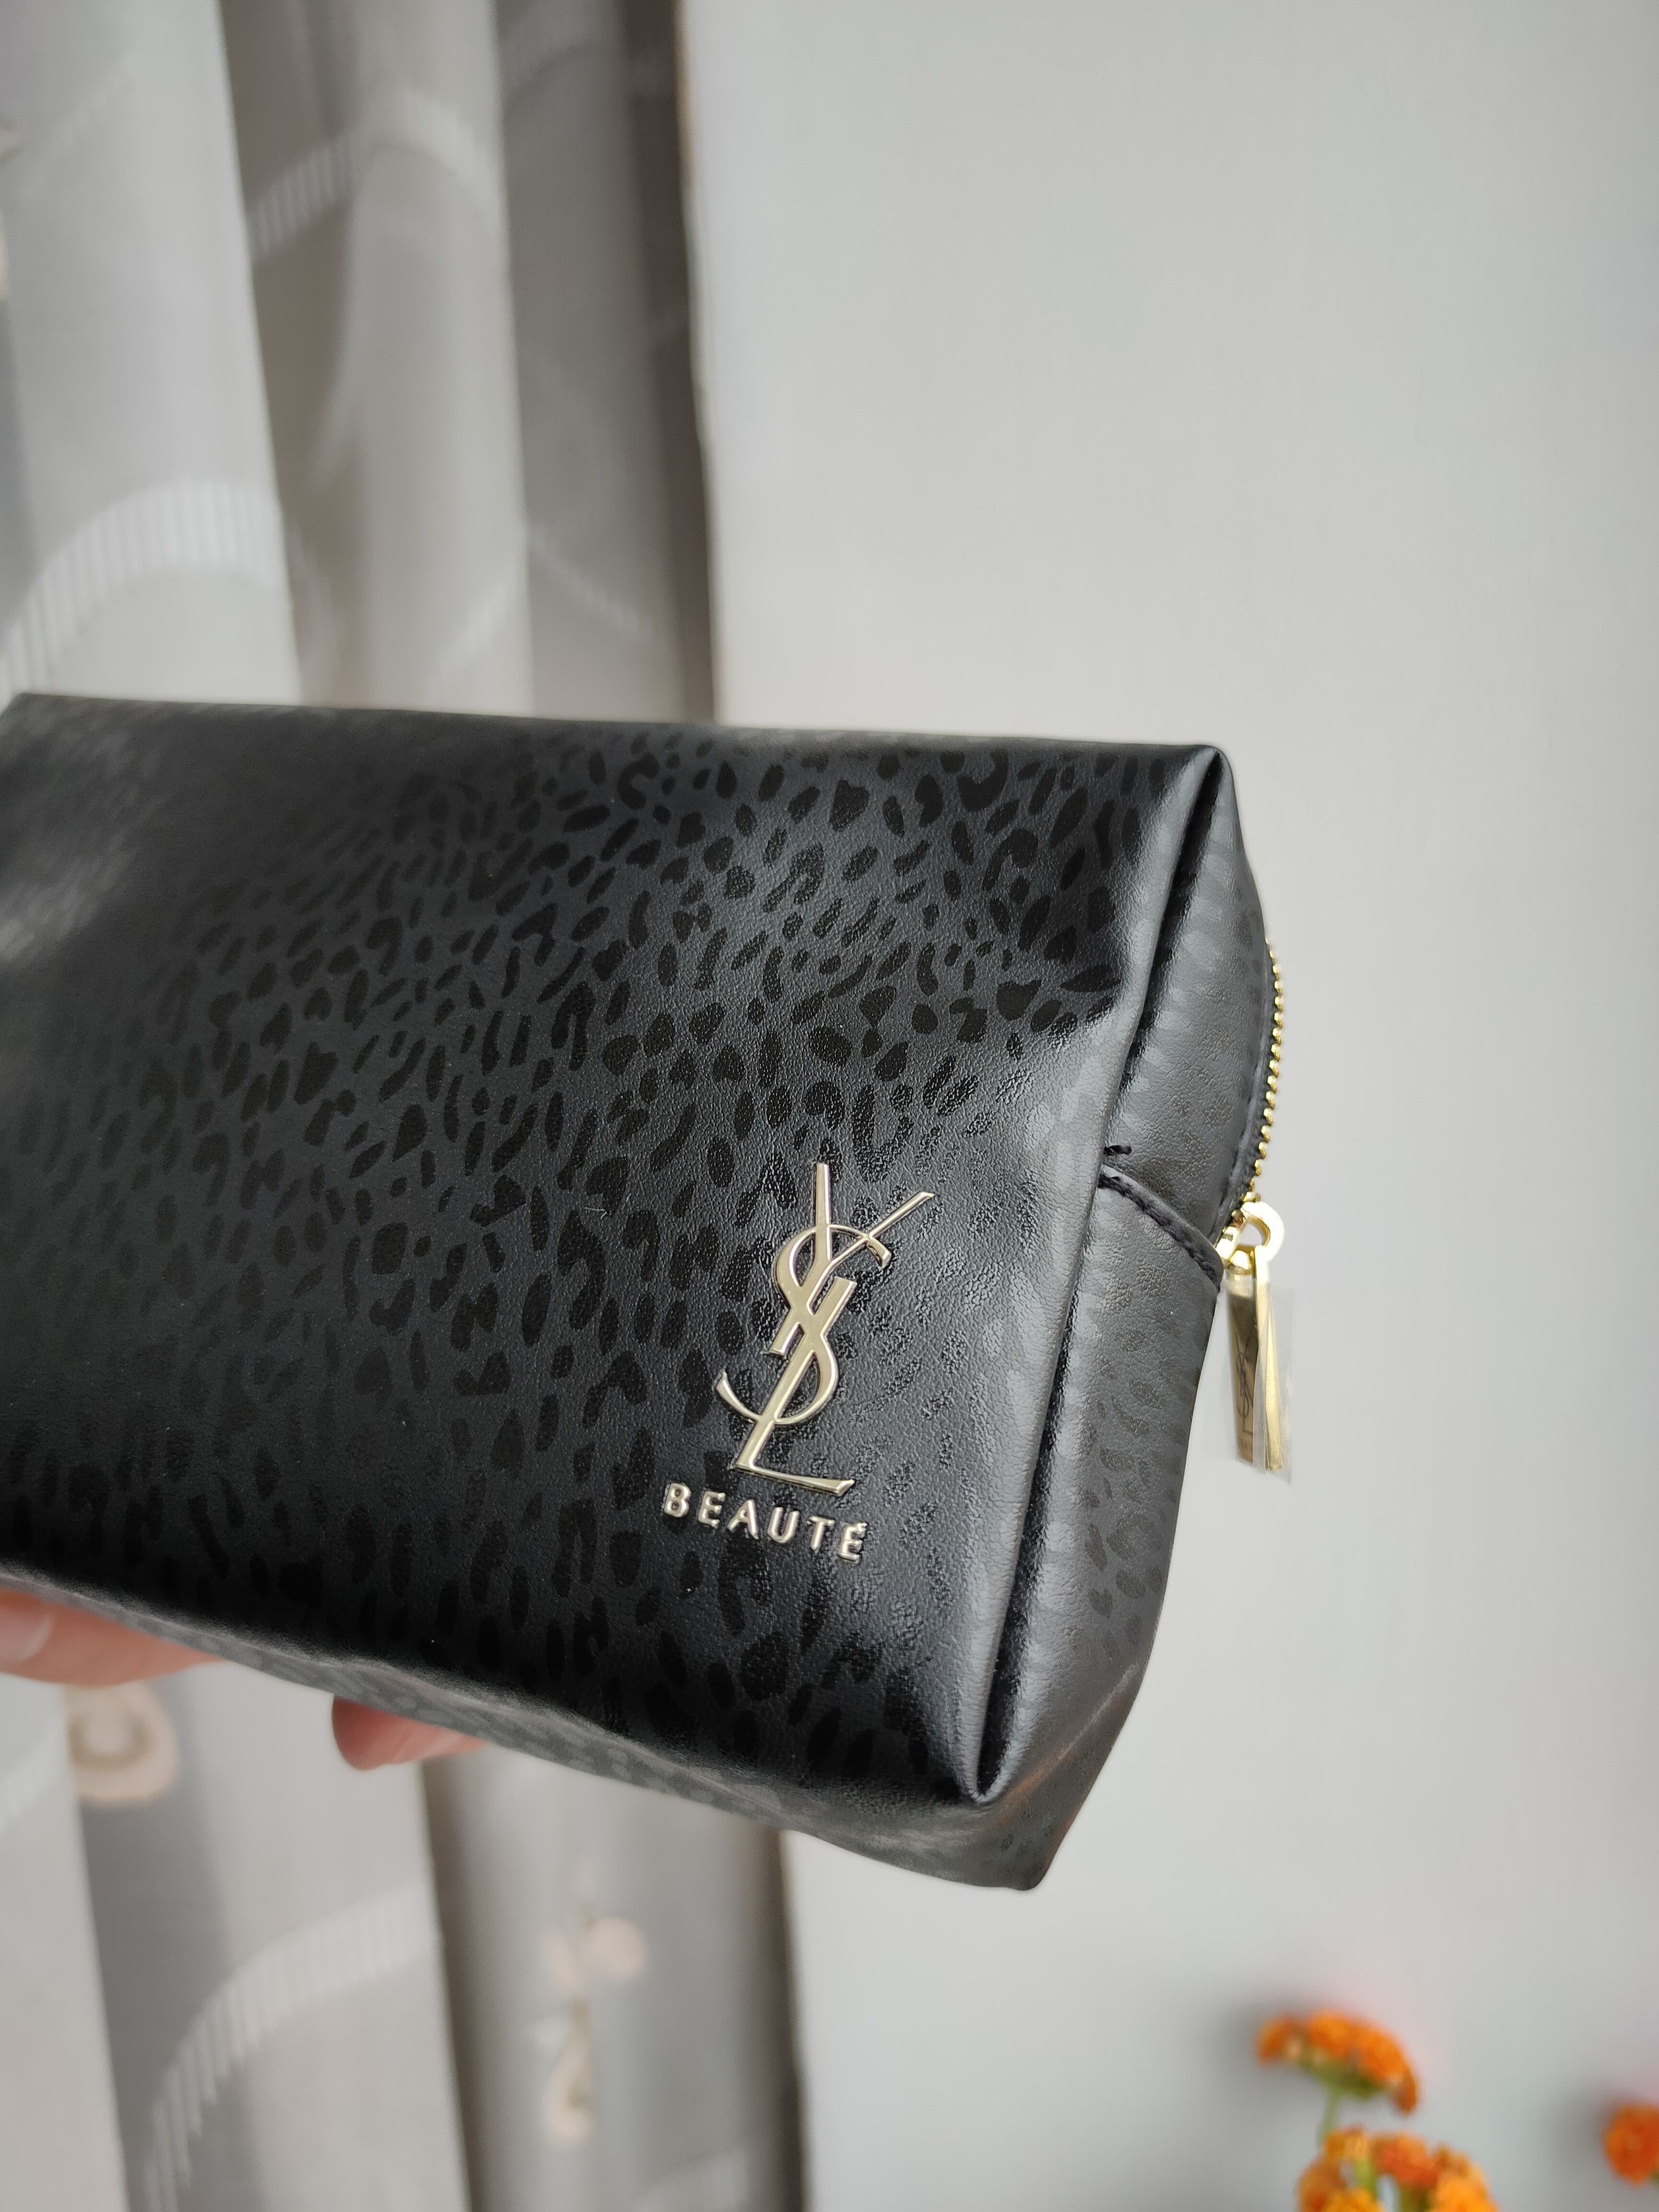 Yves Saint Laurent Beaute YSL black Makeup Bag Pouch case clutch